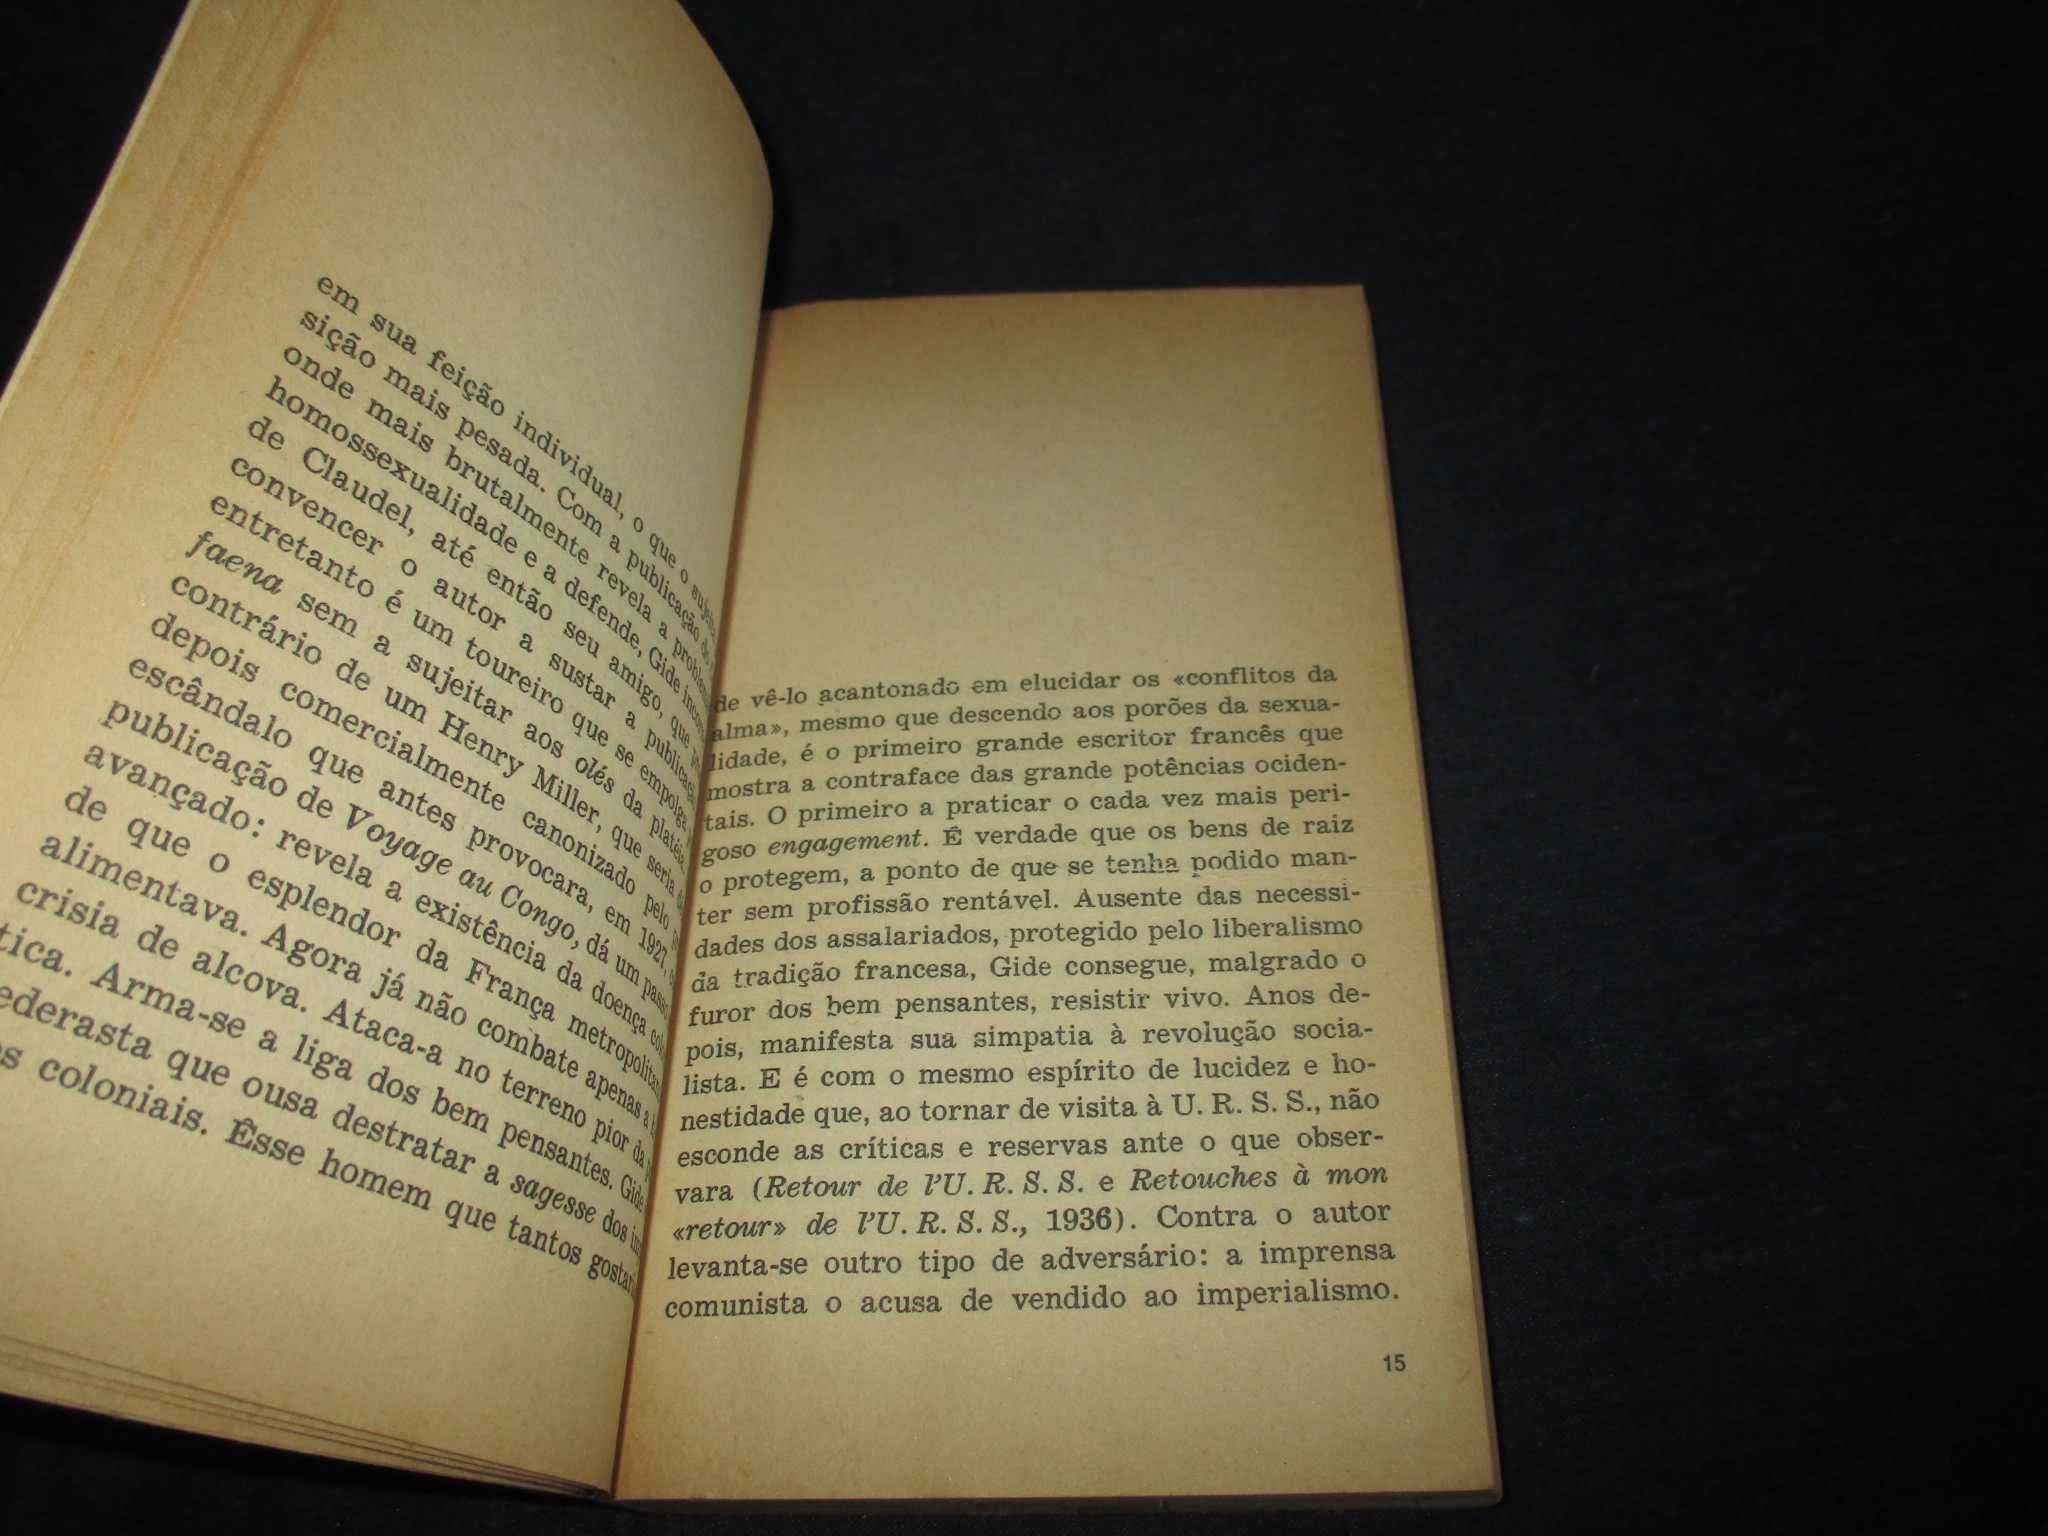 Livro O Imoralista André Gide